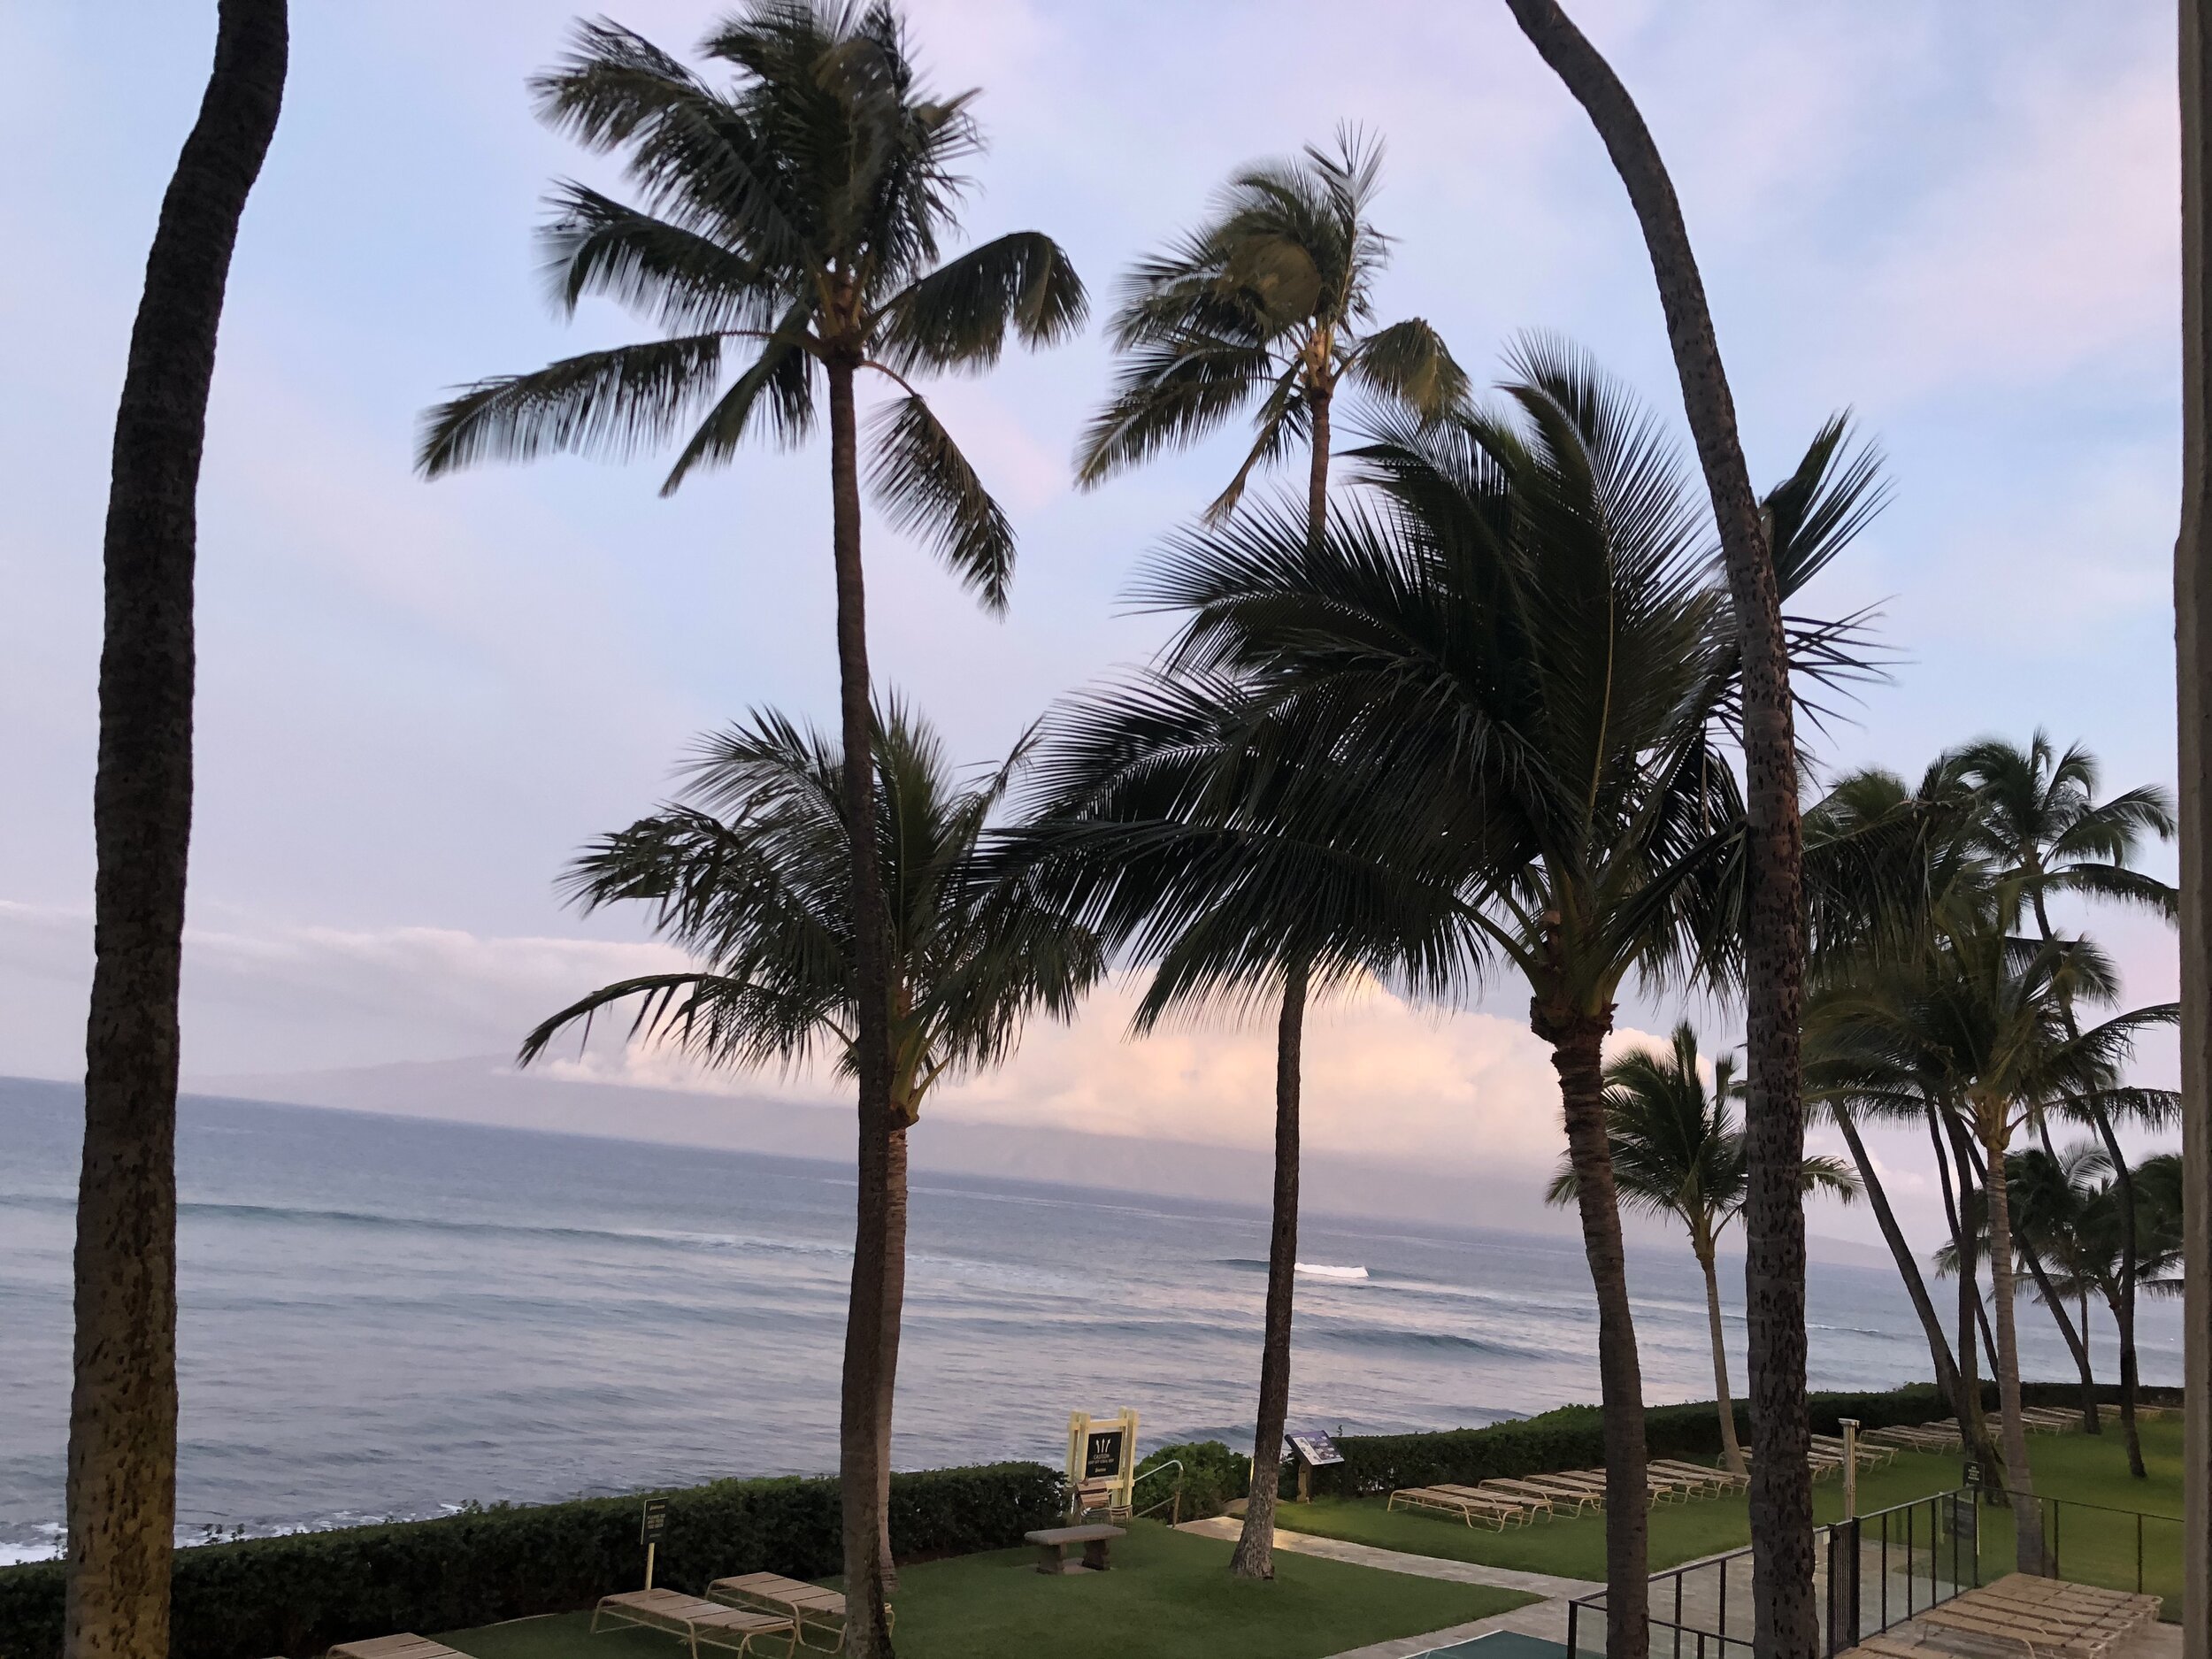 Sunrise from our 2nd floor porch, ʻōpala, at Aston Mahana Condos/Resort. Ka'anapali, Maui, HI